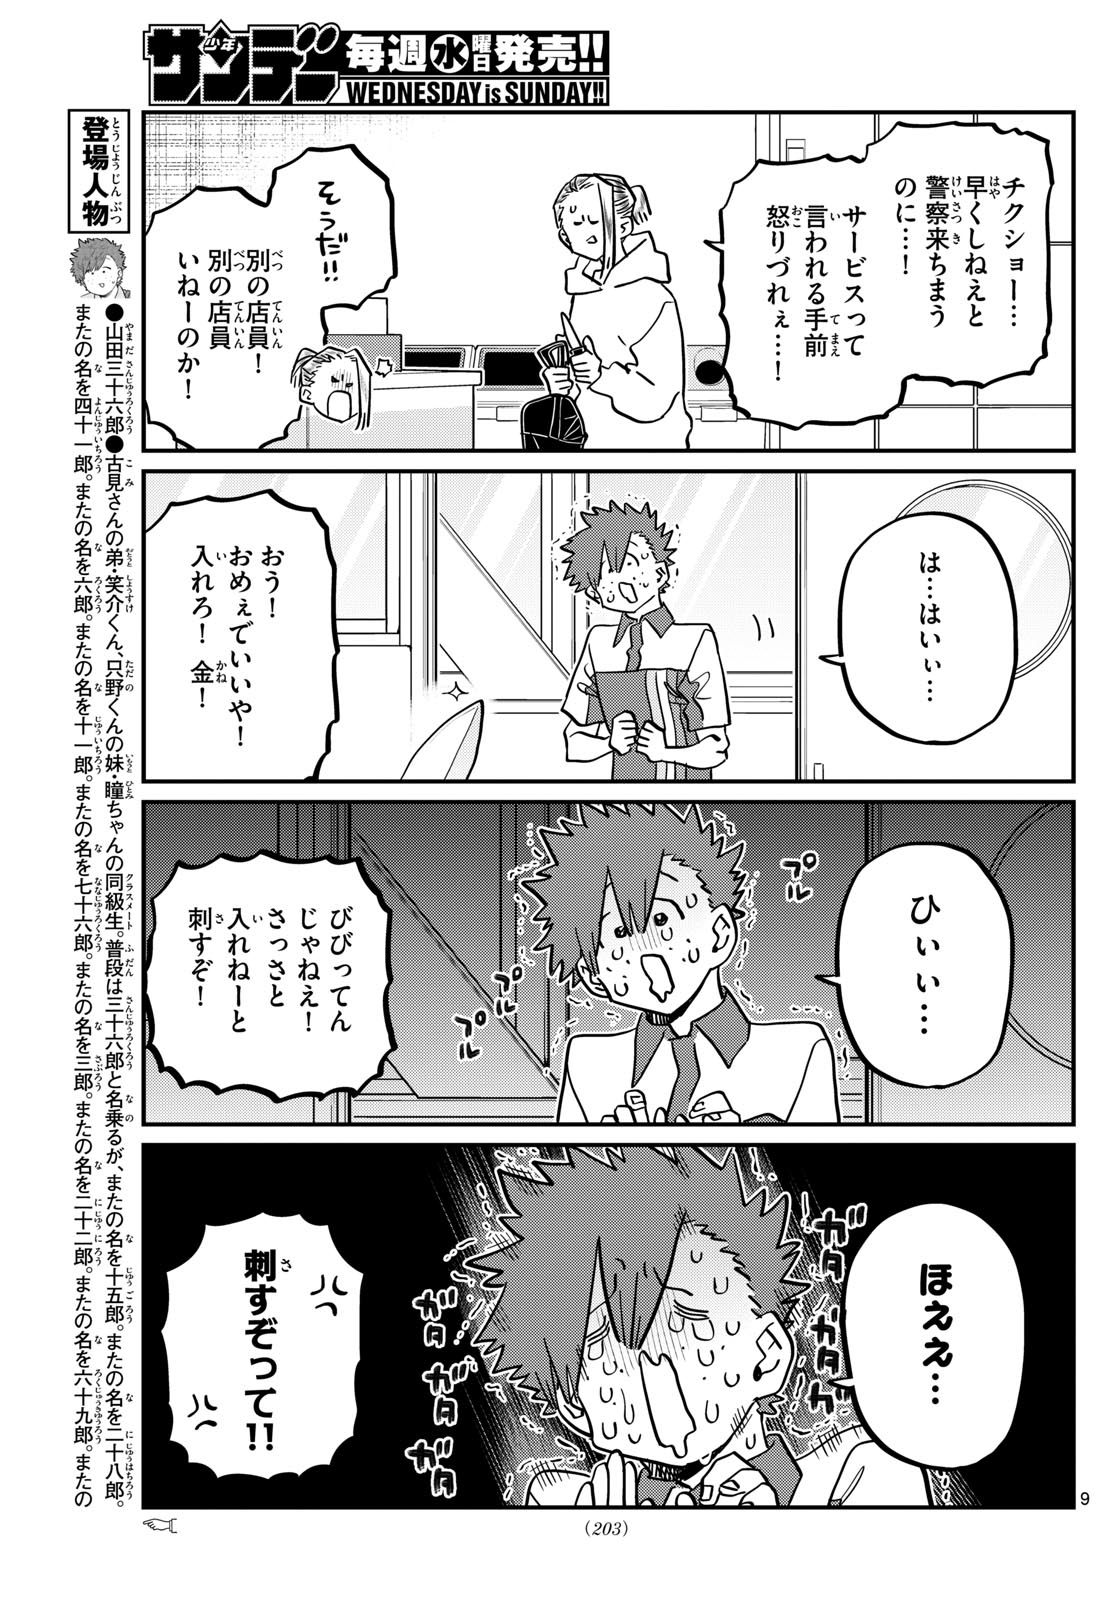 Komi-san wa Komyushou Desu - Chapter 460 - Page 9